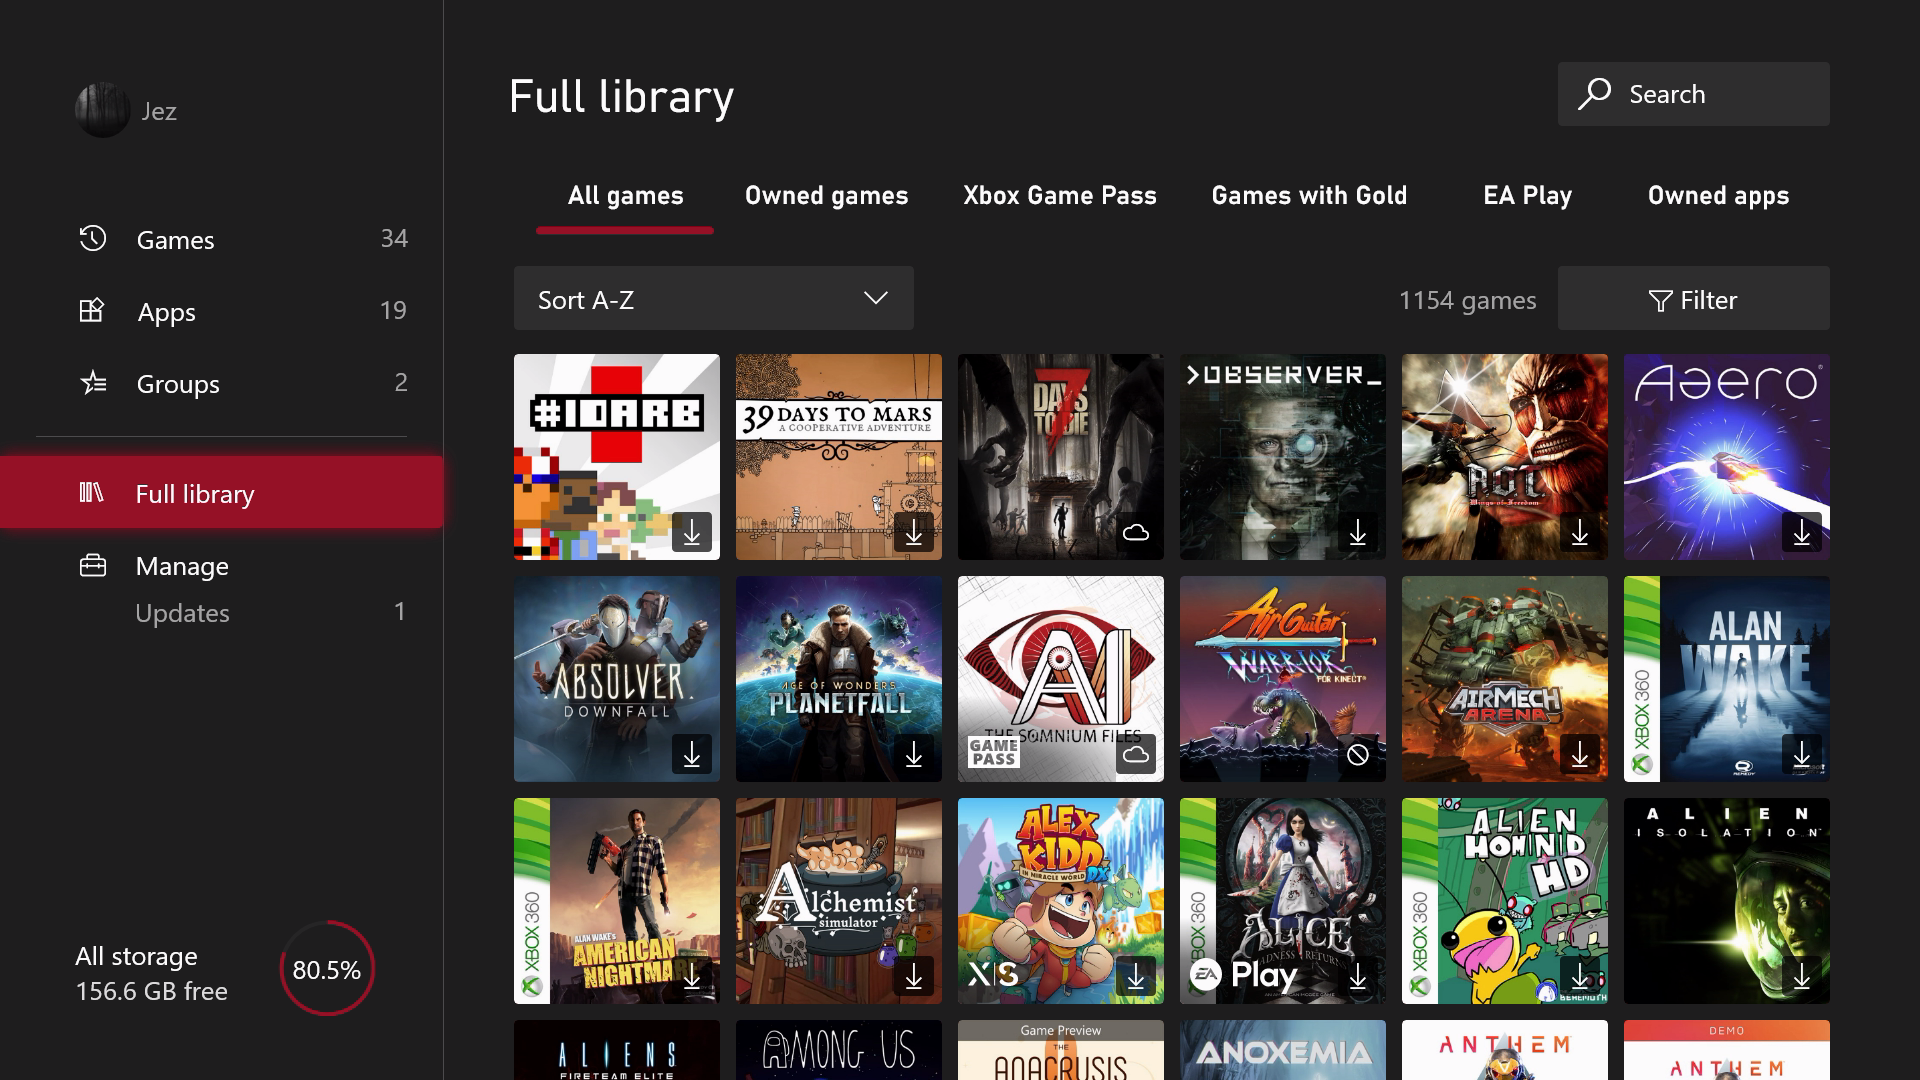 La biblioteca completa de juegos y aplicaciones de Xbox, rediseñada a partir de agosto de 2022